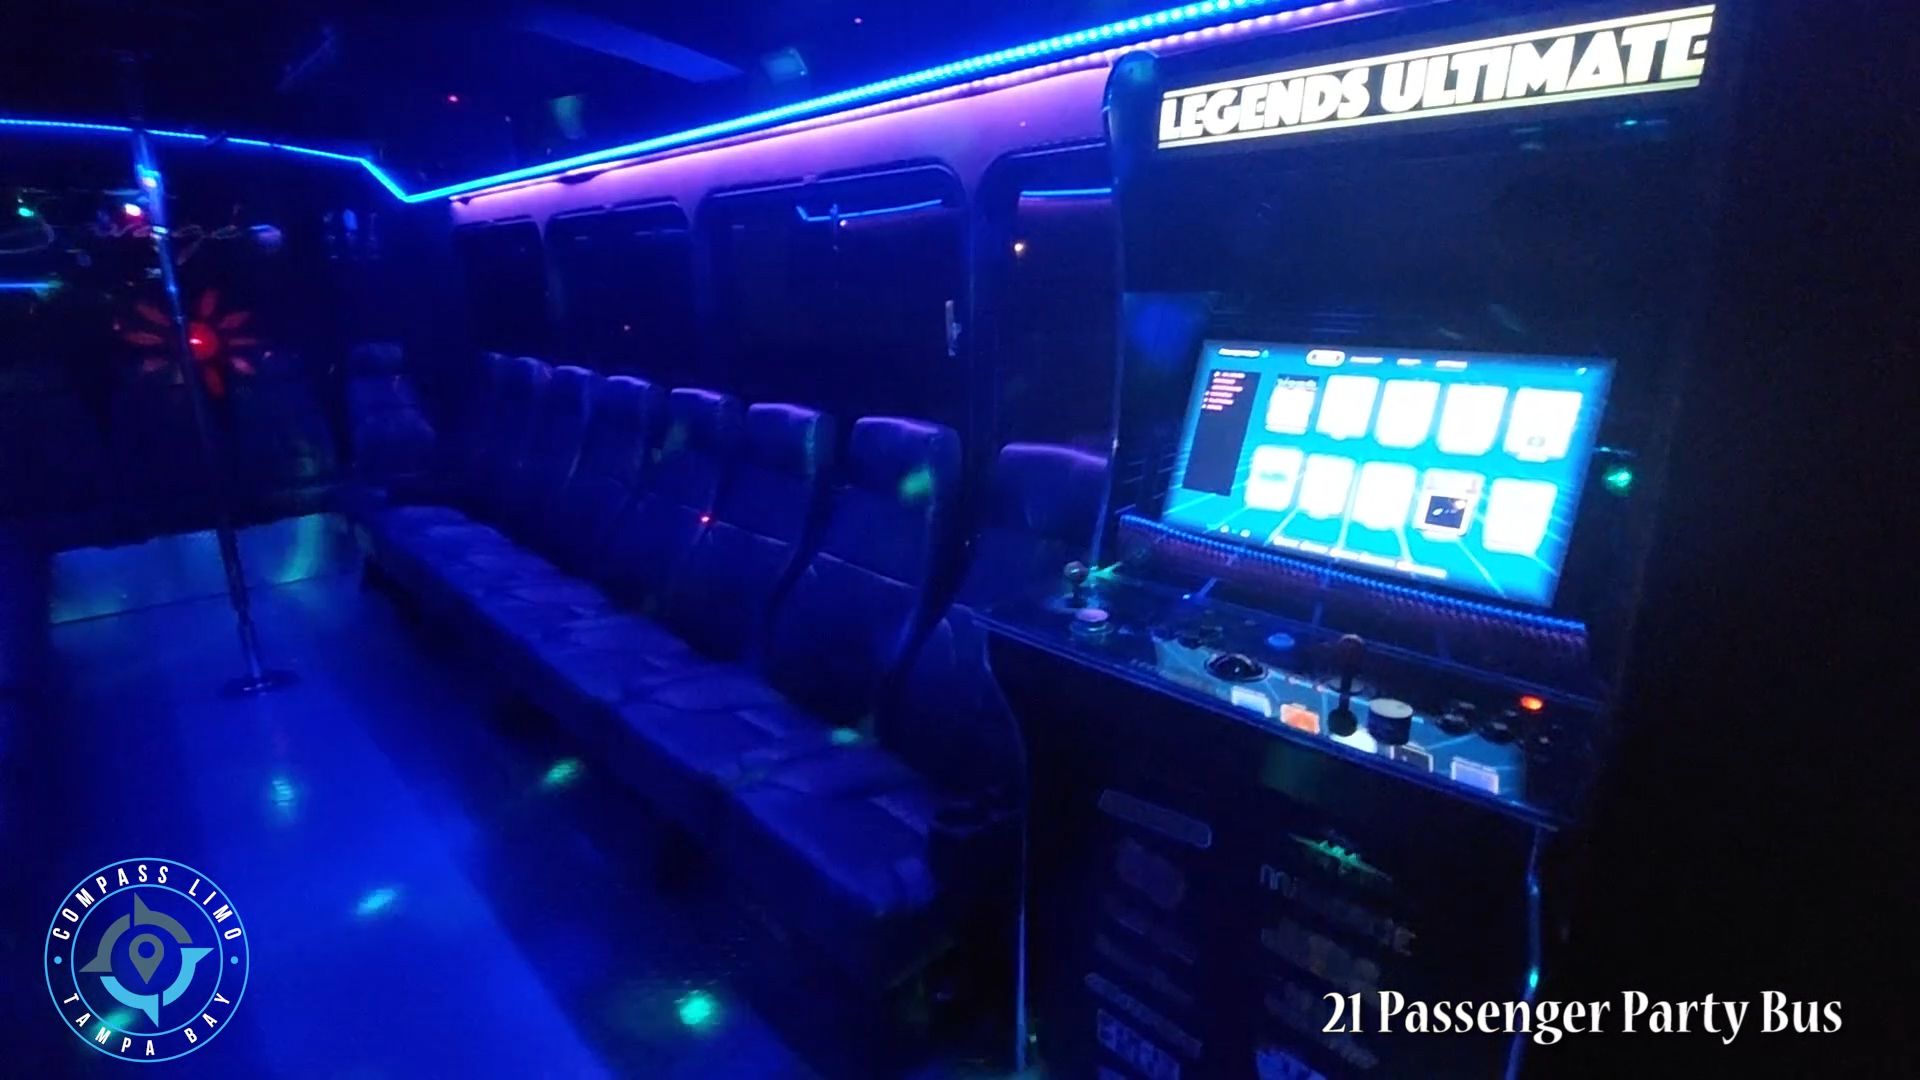 21 Passenger Party Bus